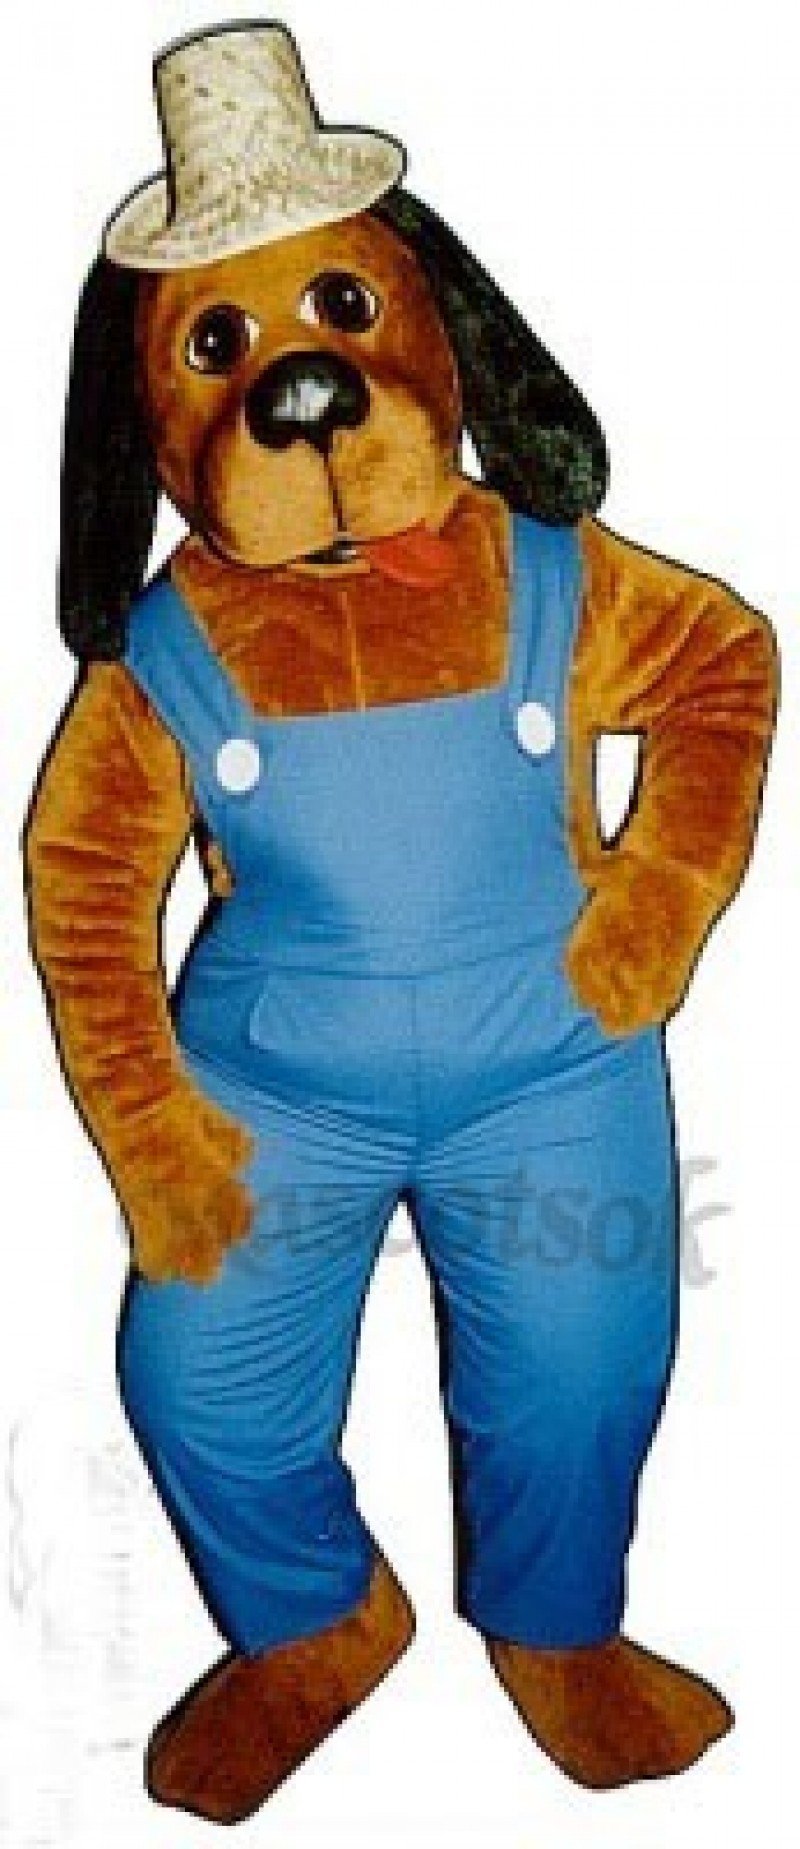 Cute Hoe-Down Hound Dog Mascot Costume